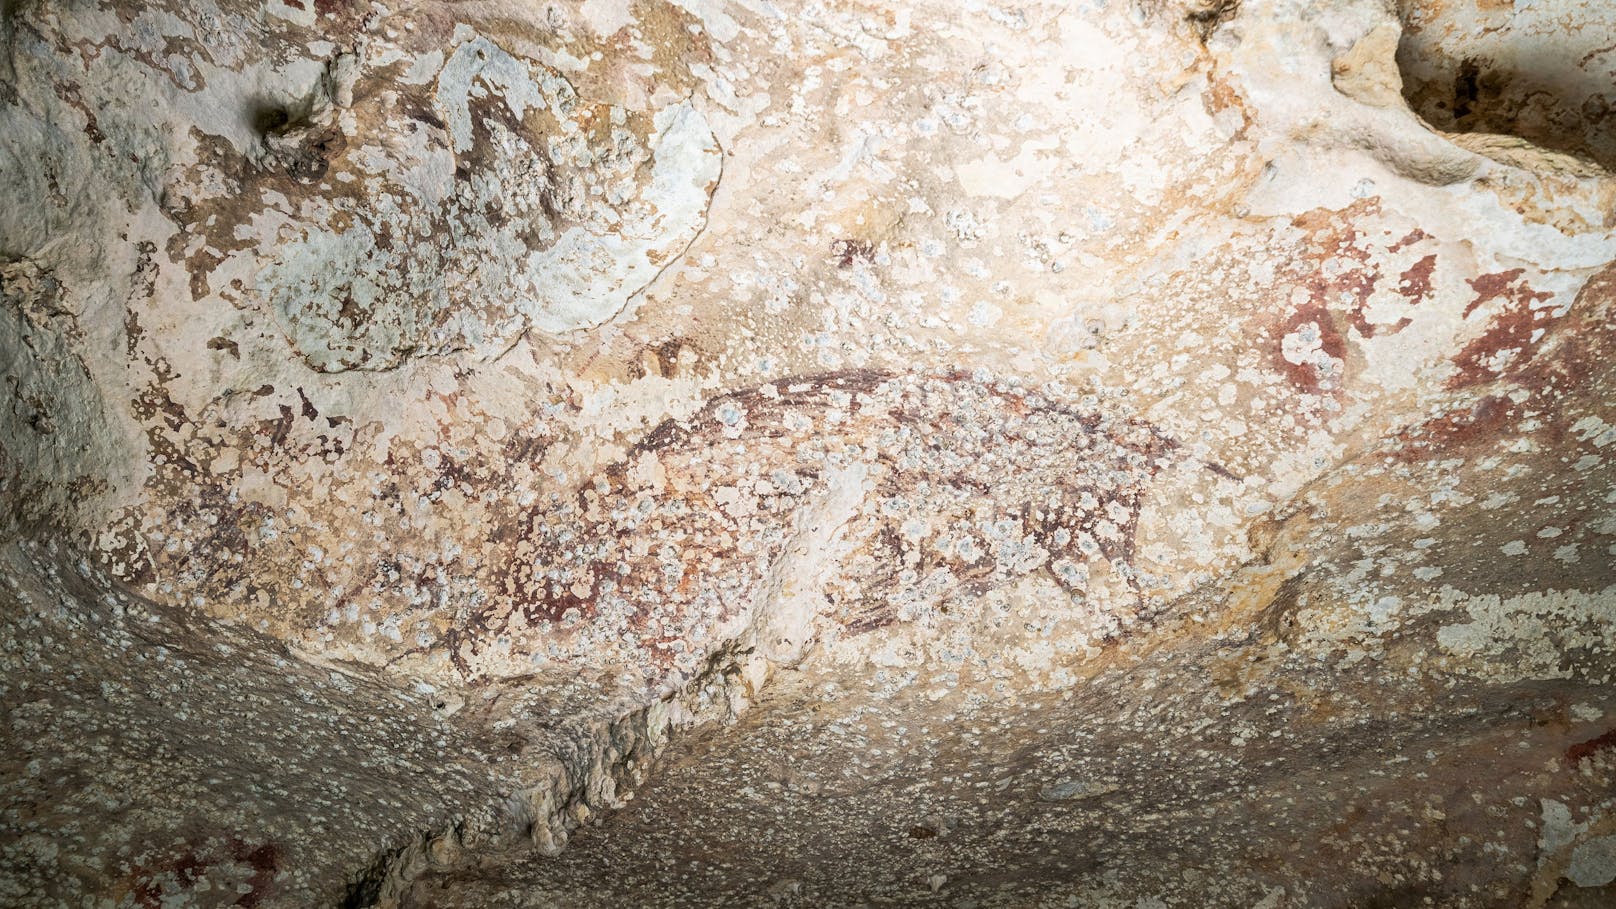 So sieht das Bild in der Kalksteinhöhle aus.